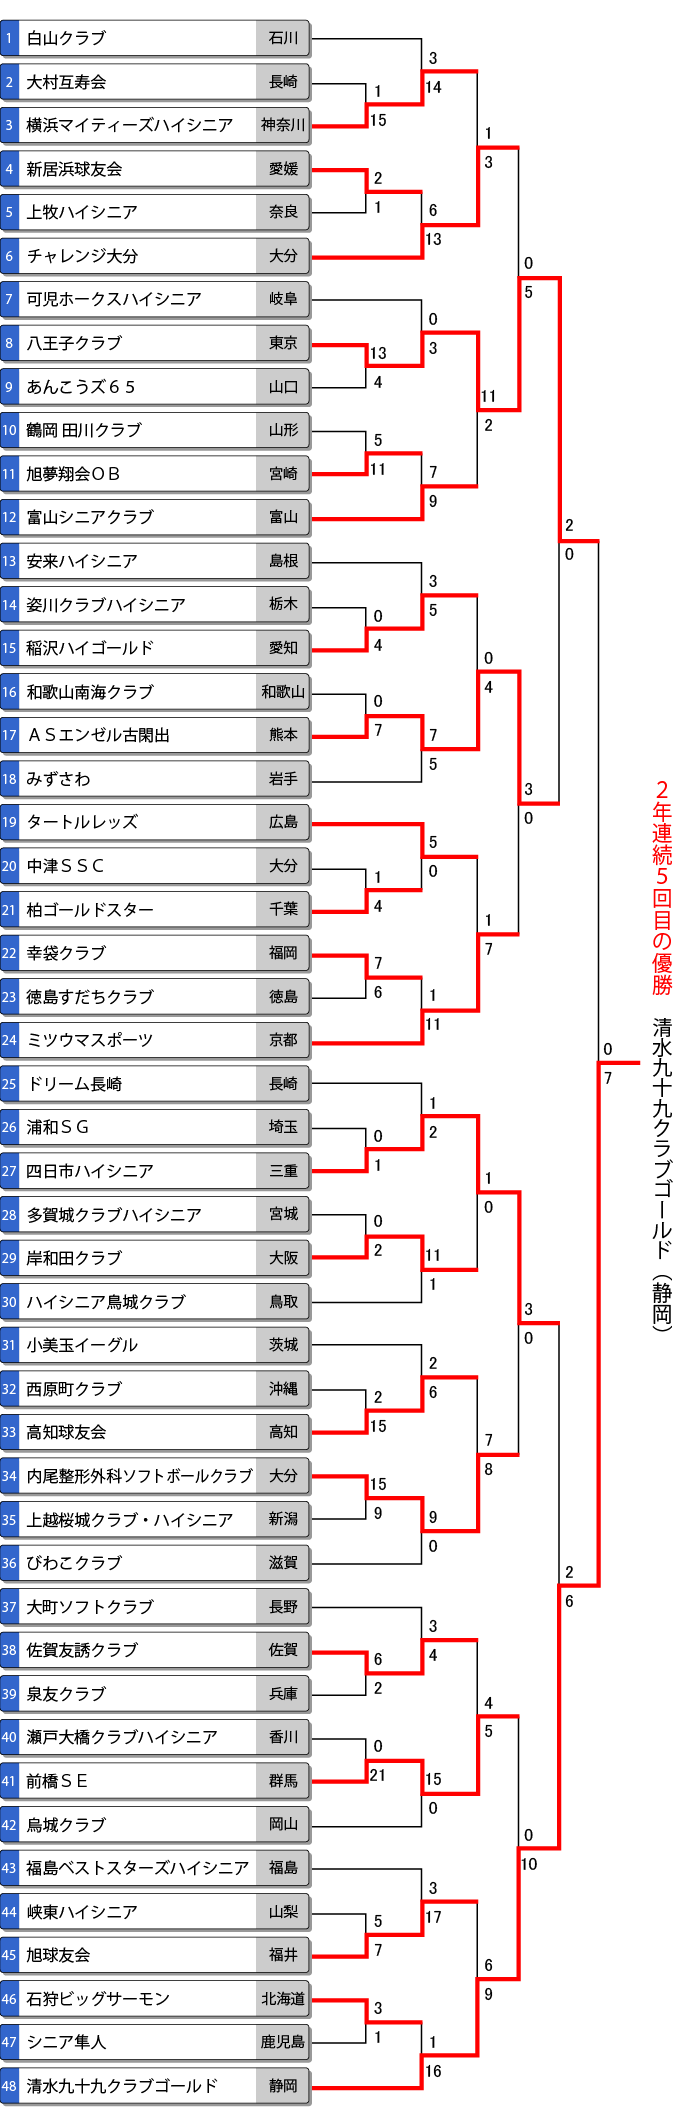 第13回全日本ハイシニア大会トーナメント表